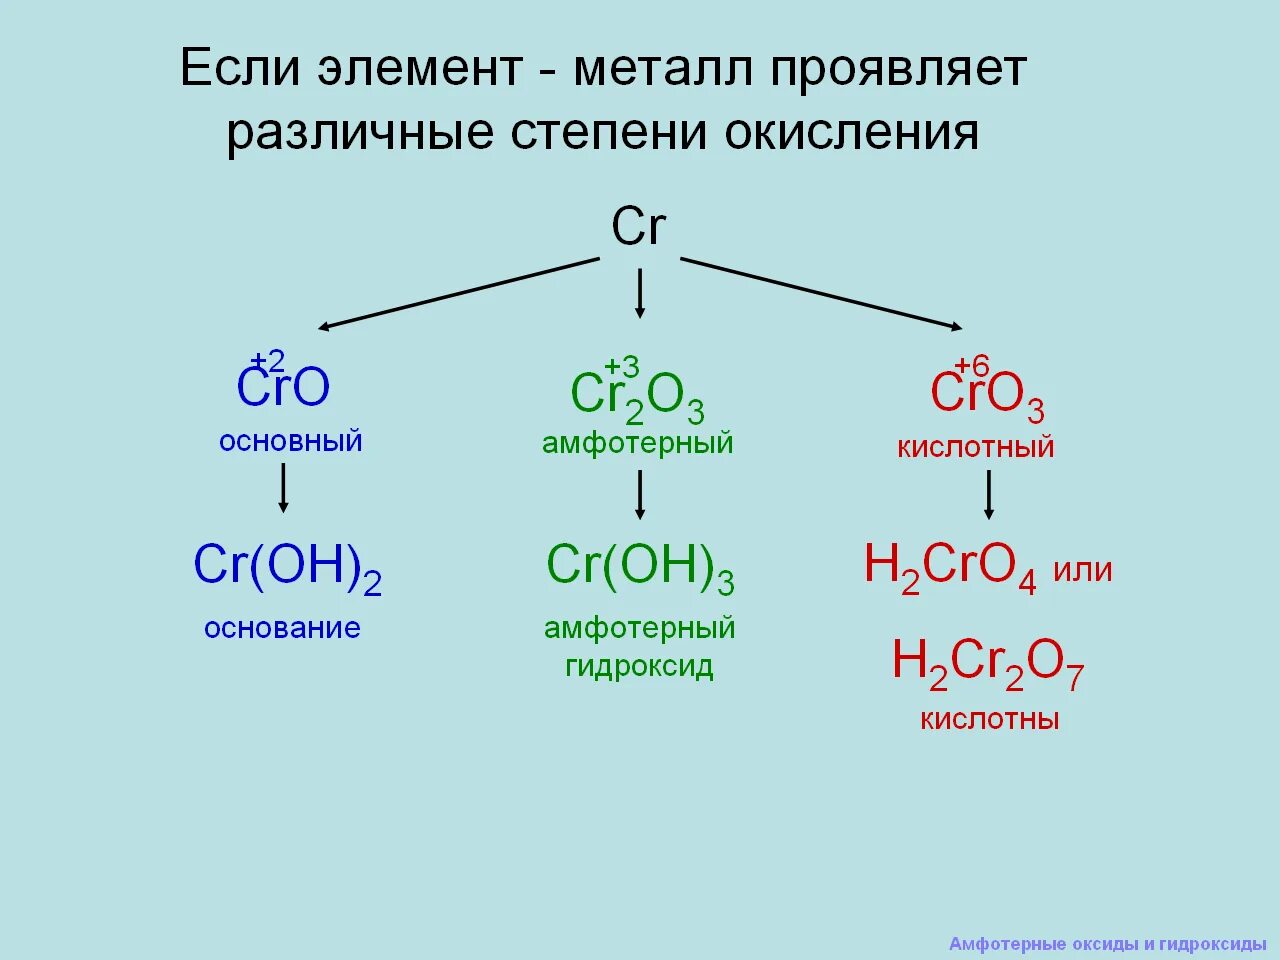 Амфотерные оксиды и гидроксиды 9 класс объяснение. Химия 8 класс амфотерные гидроксиды. Химия 9 класс амфотерные оксиды. Амфотерные оксиды и гидроксиды 8 класс конспект.